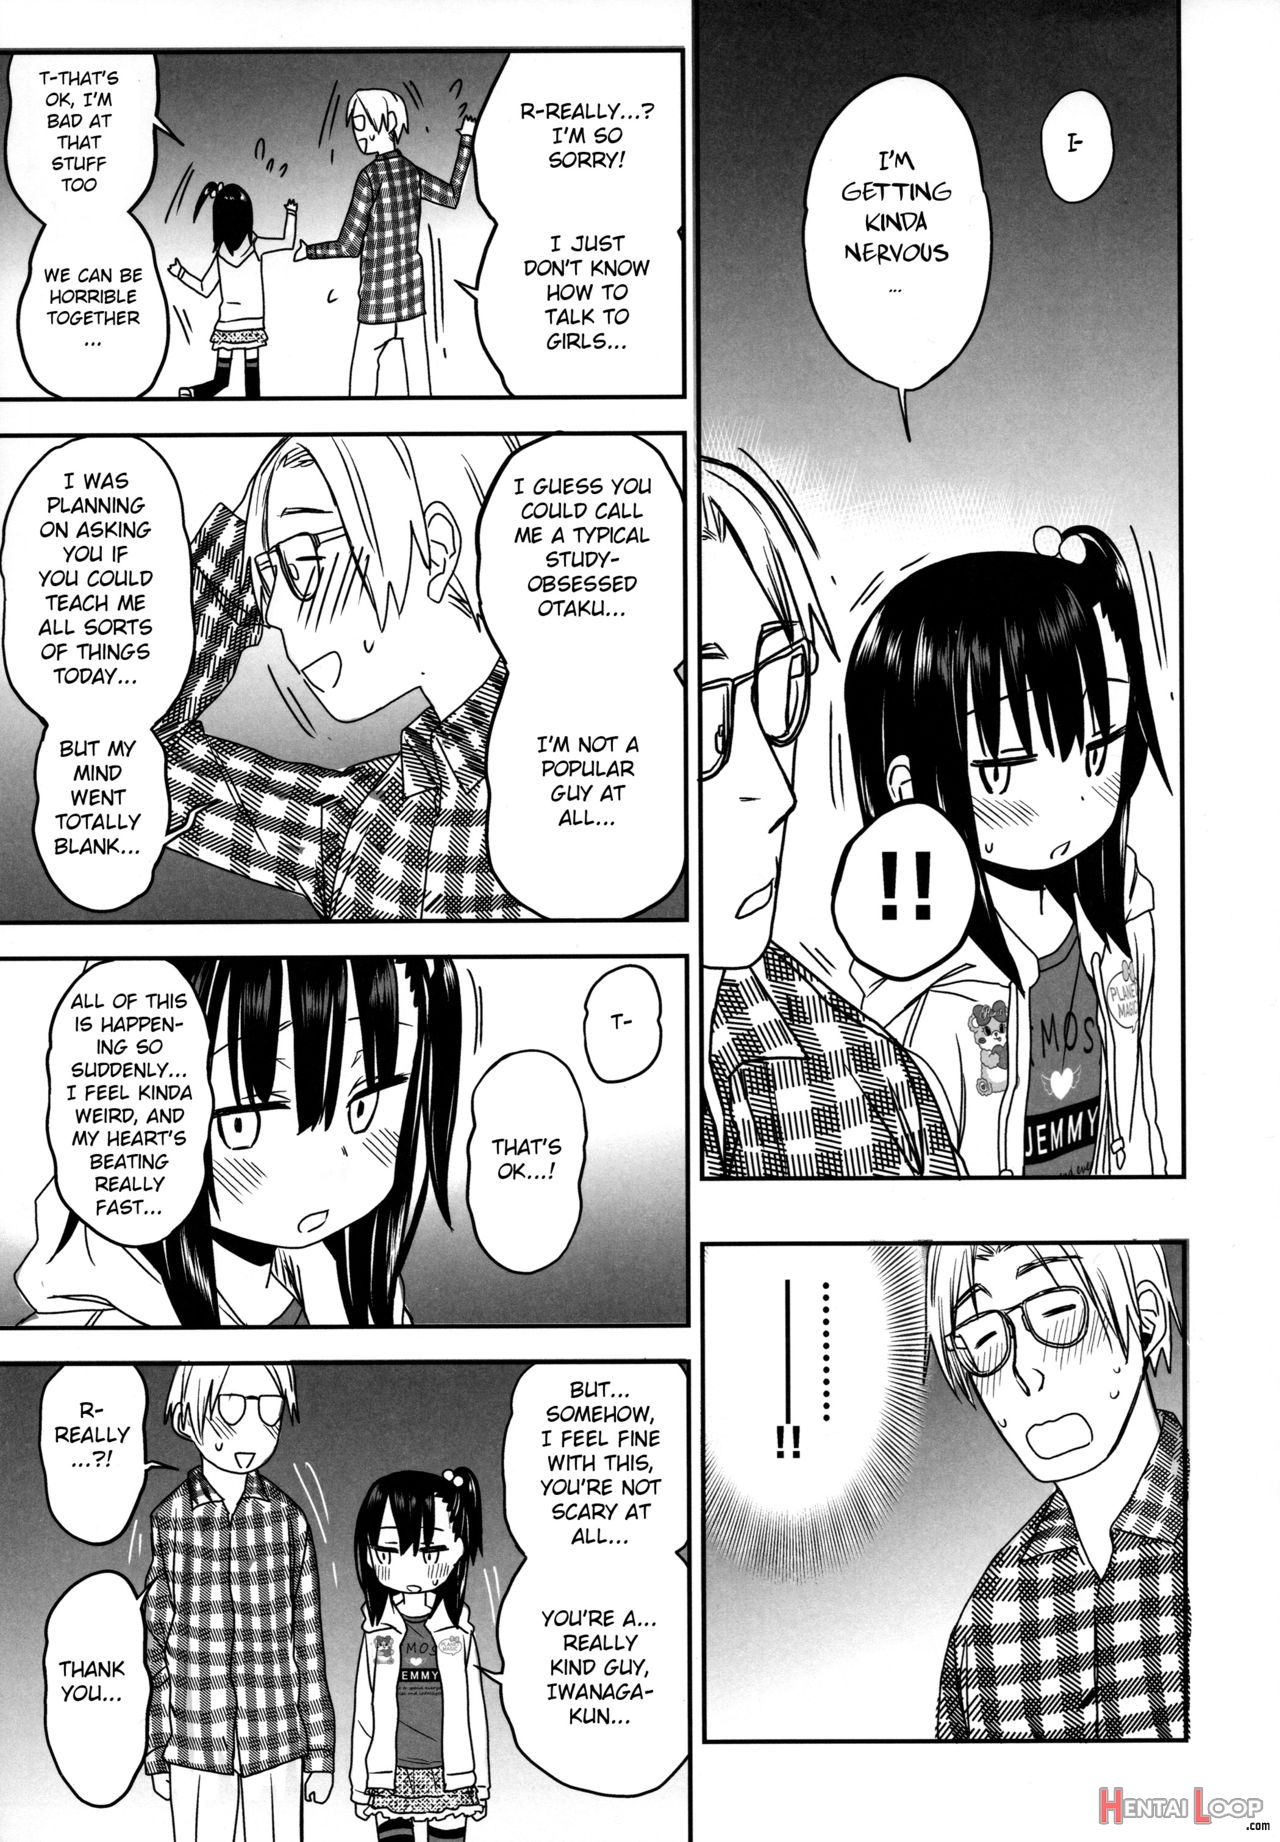 Tonari No Mako-chan Season 2 Vol. 2 page 13